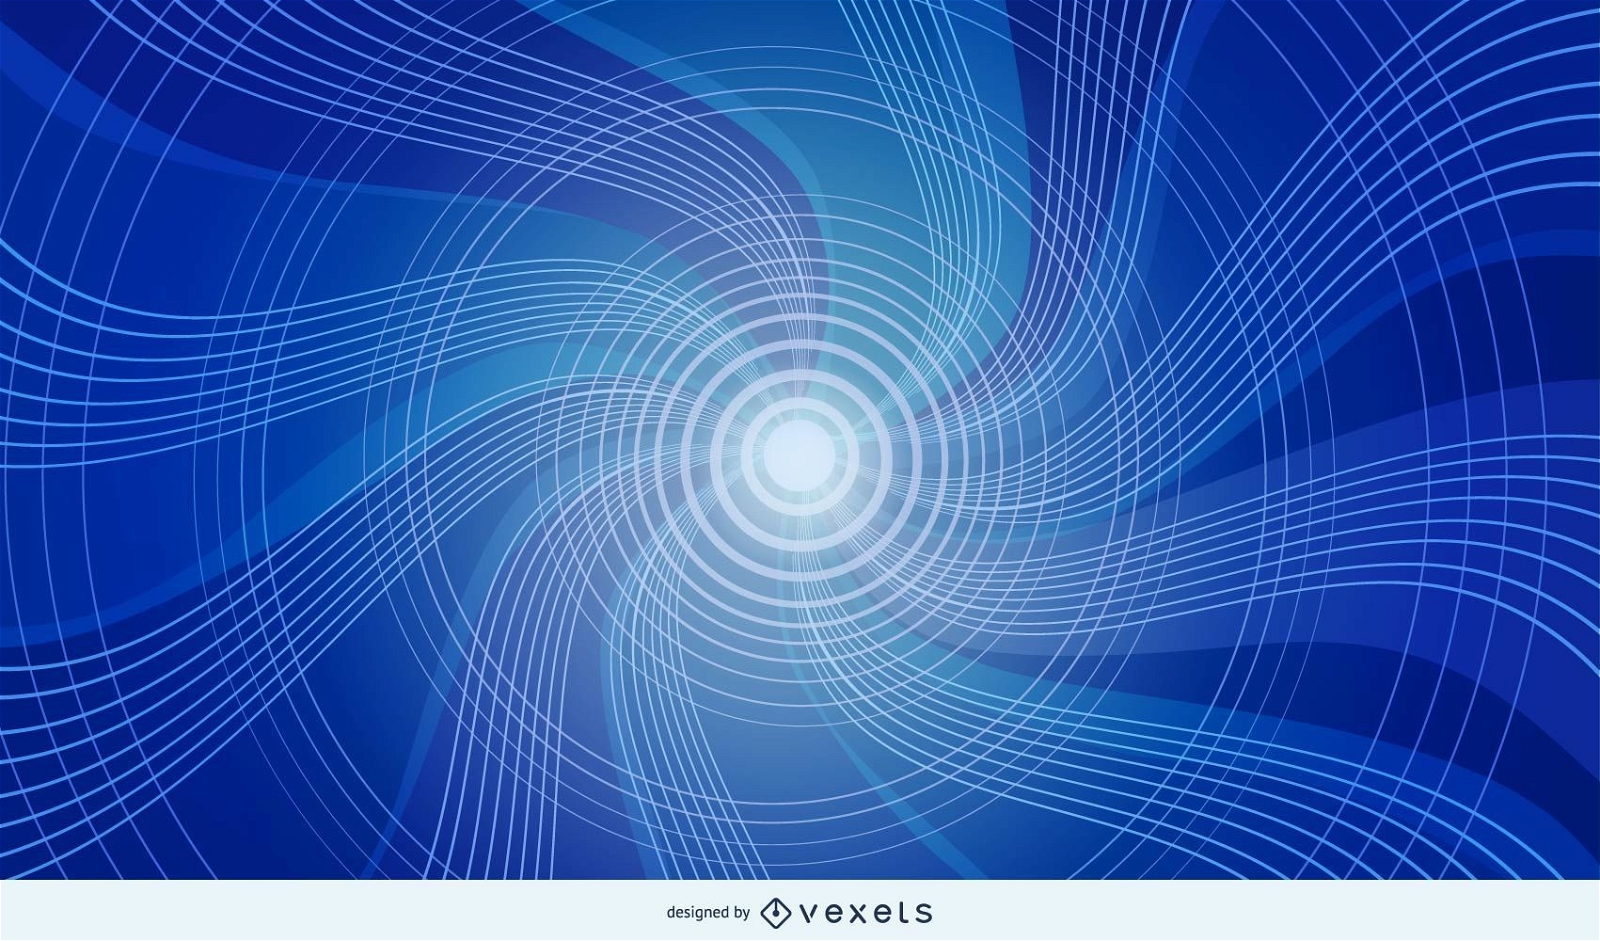 Fundo de redemoinhos de v?rtice espiral azul